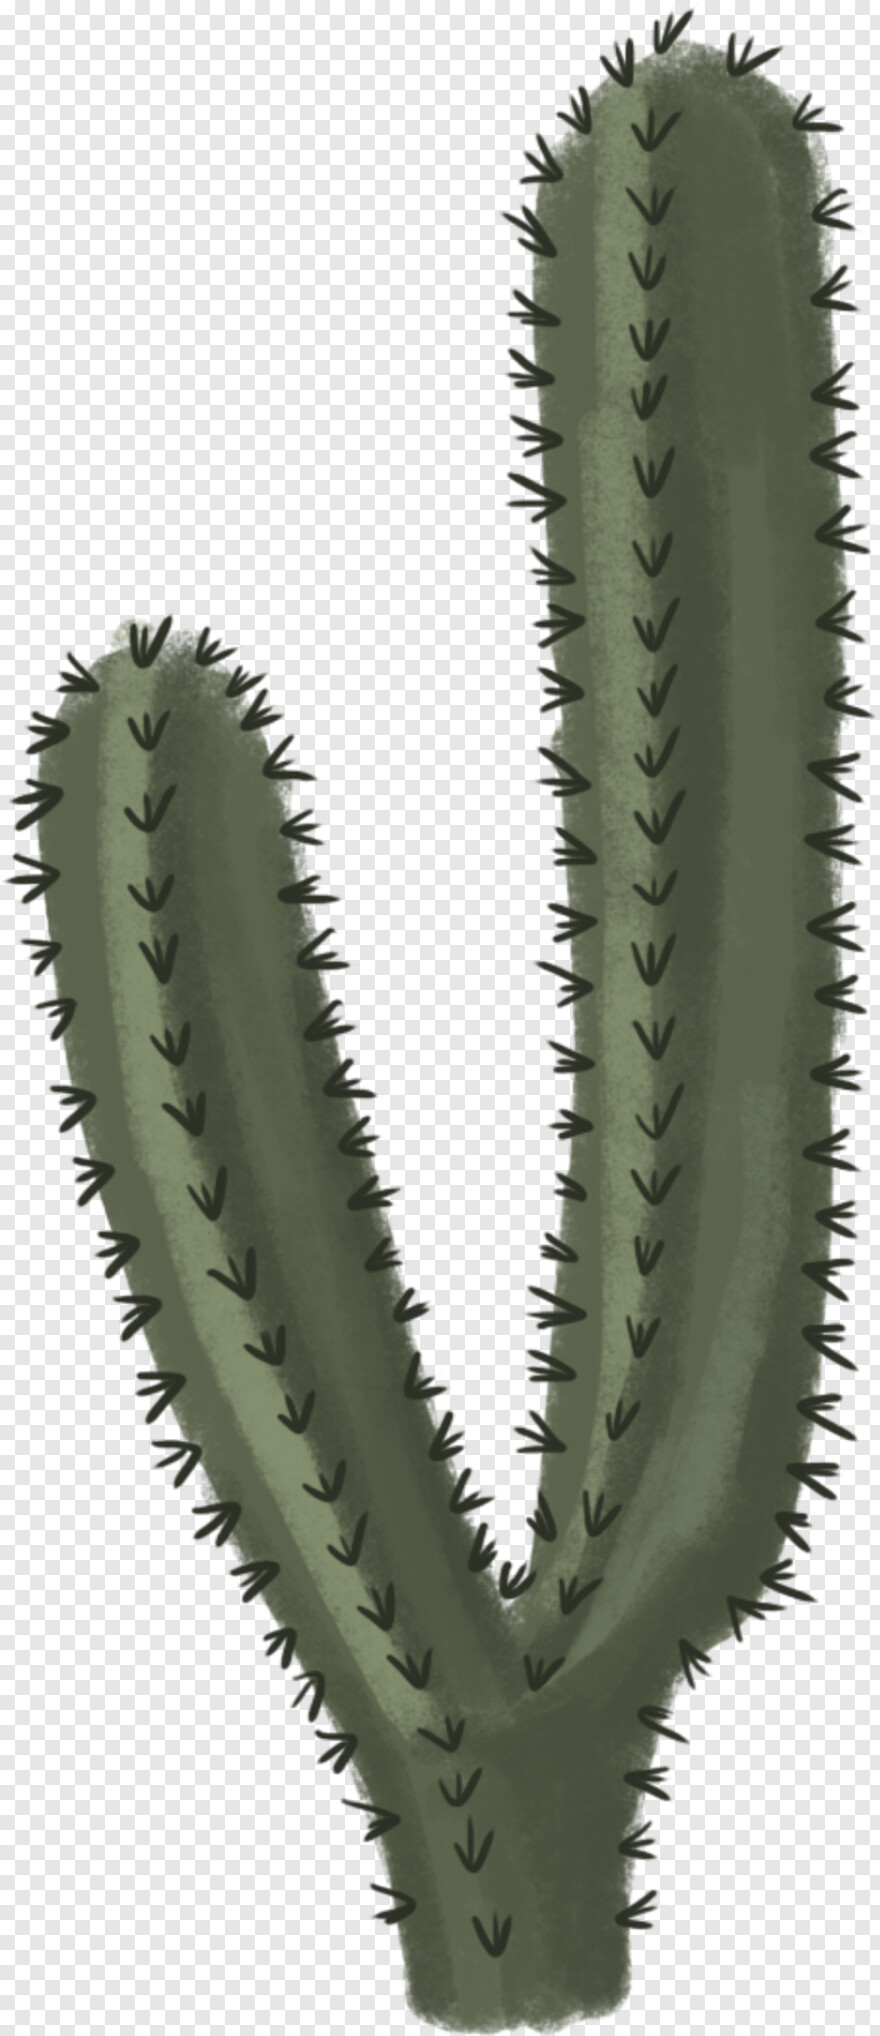 cactus-silhouette # 1088946